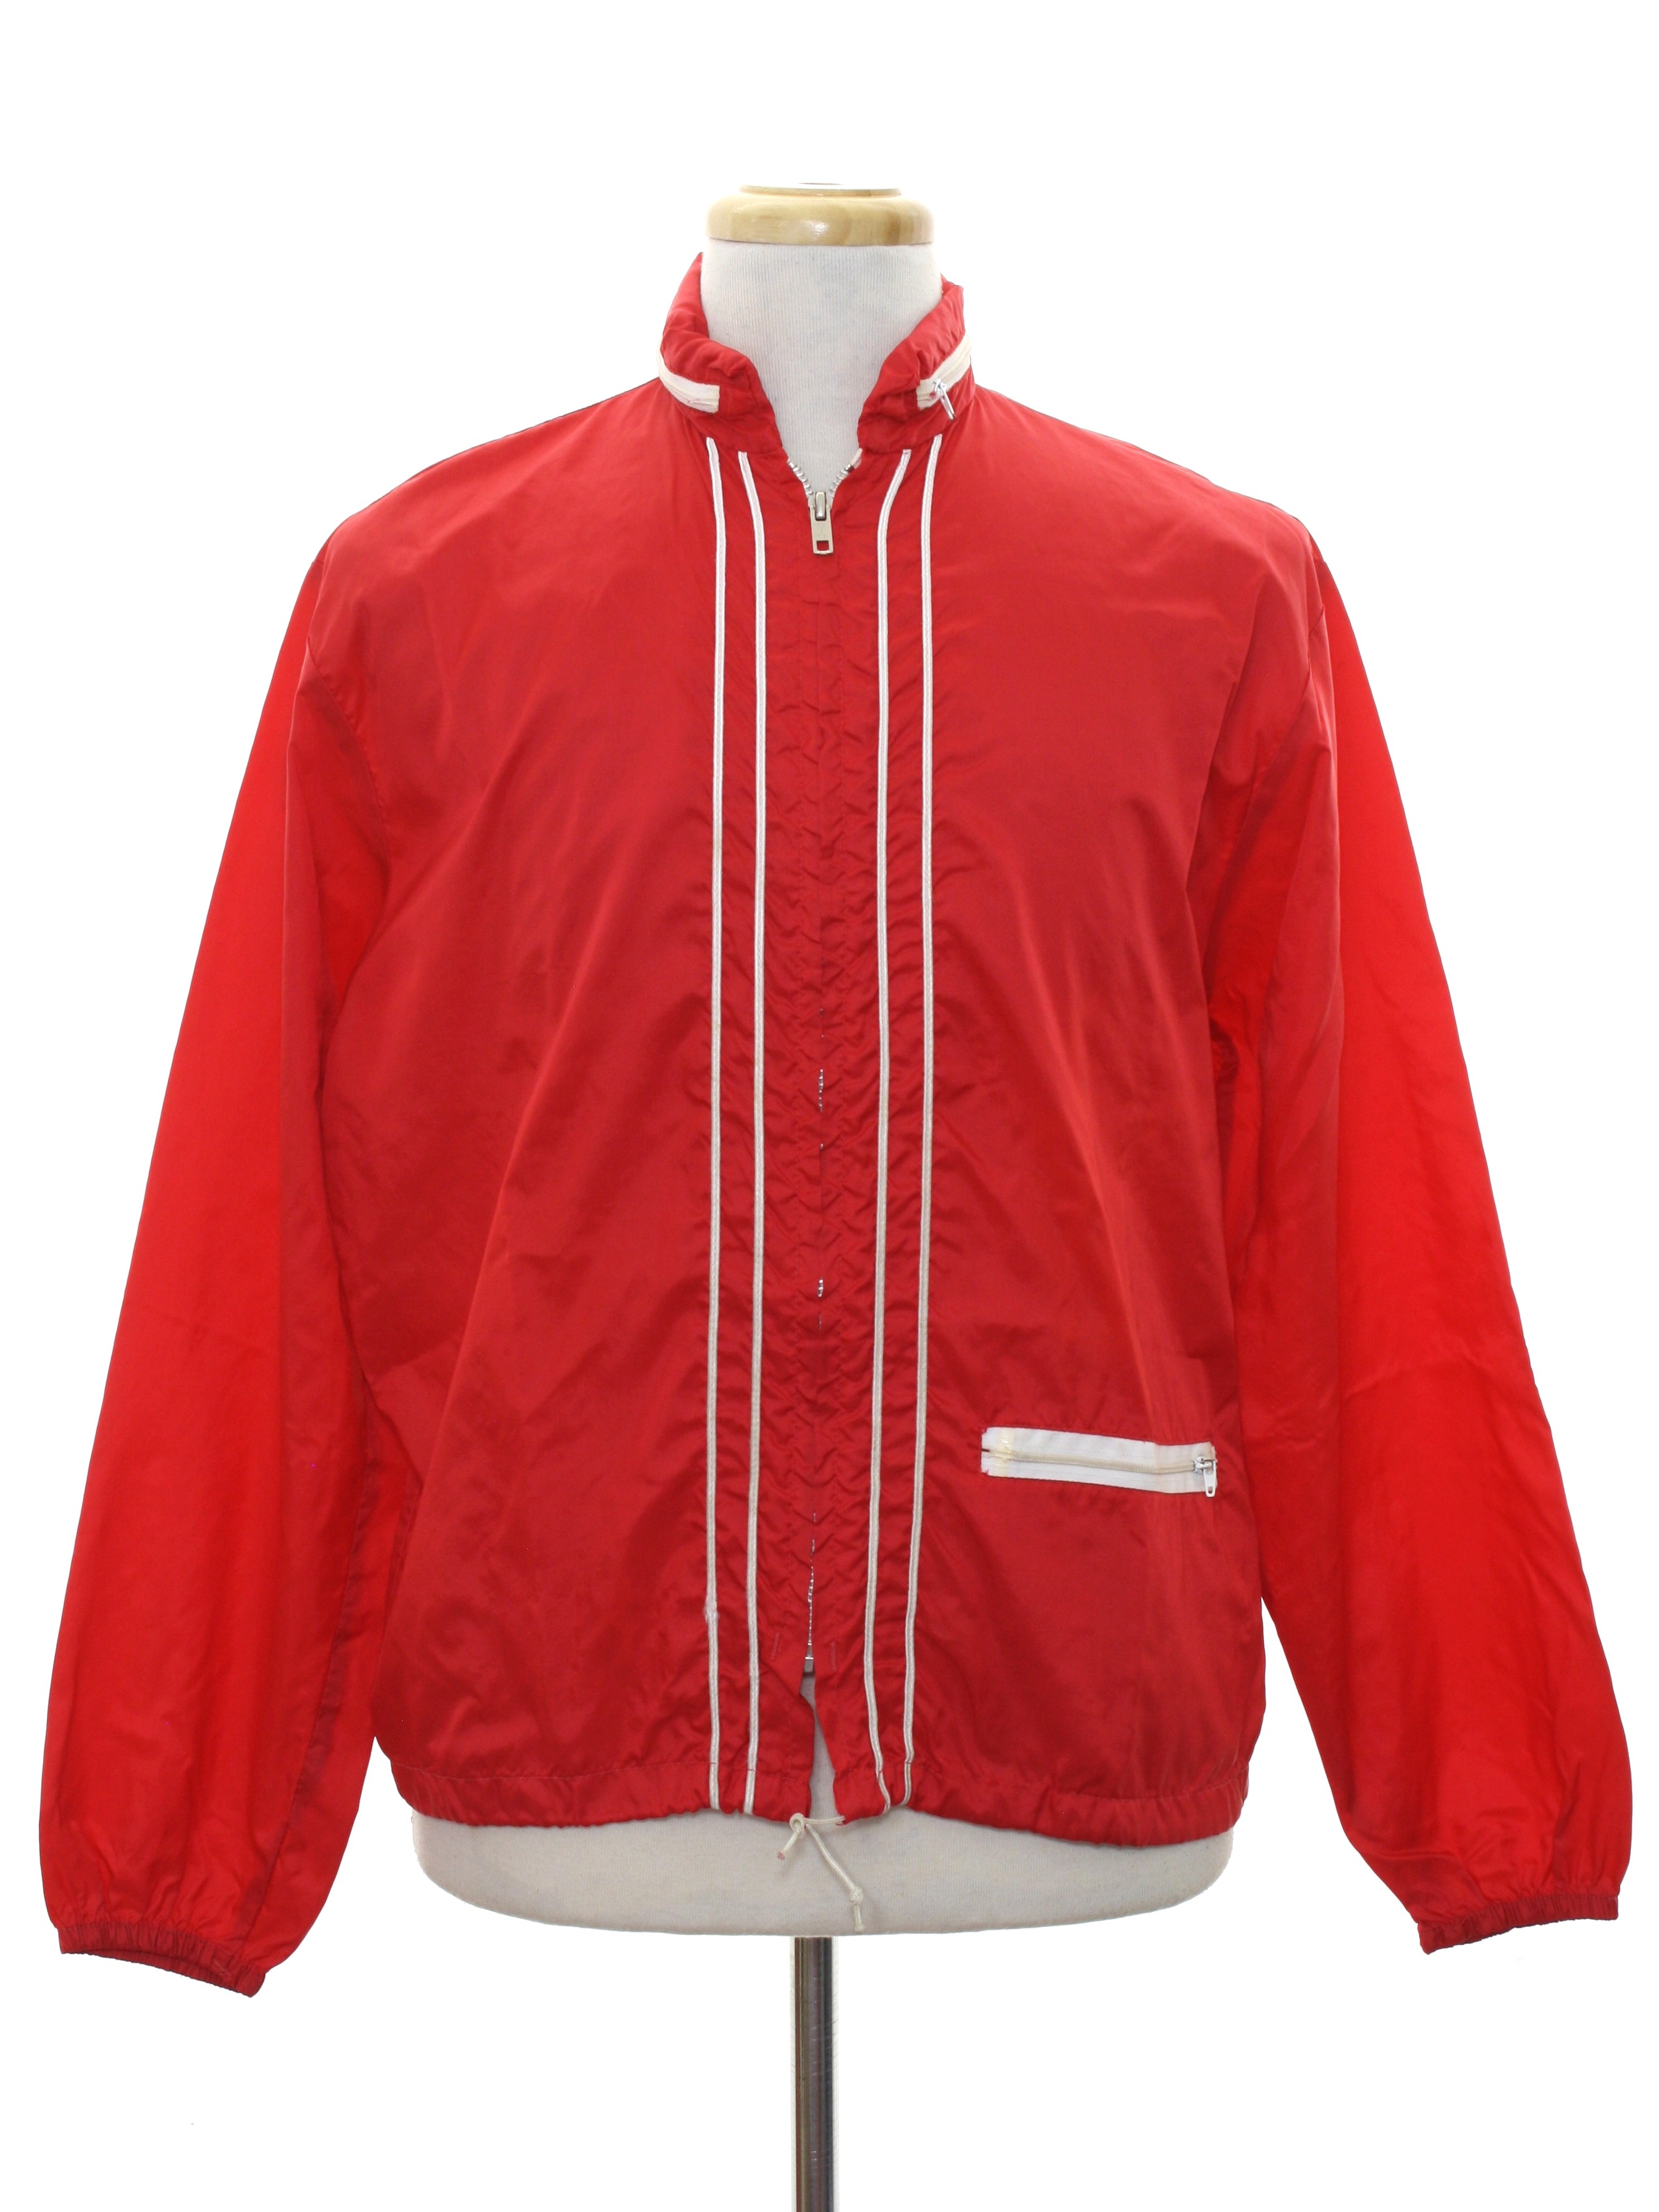 2021人気新作 1960s vintage red nylon jacket aob.adv.br